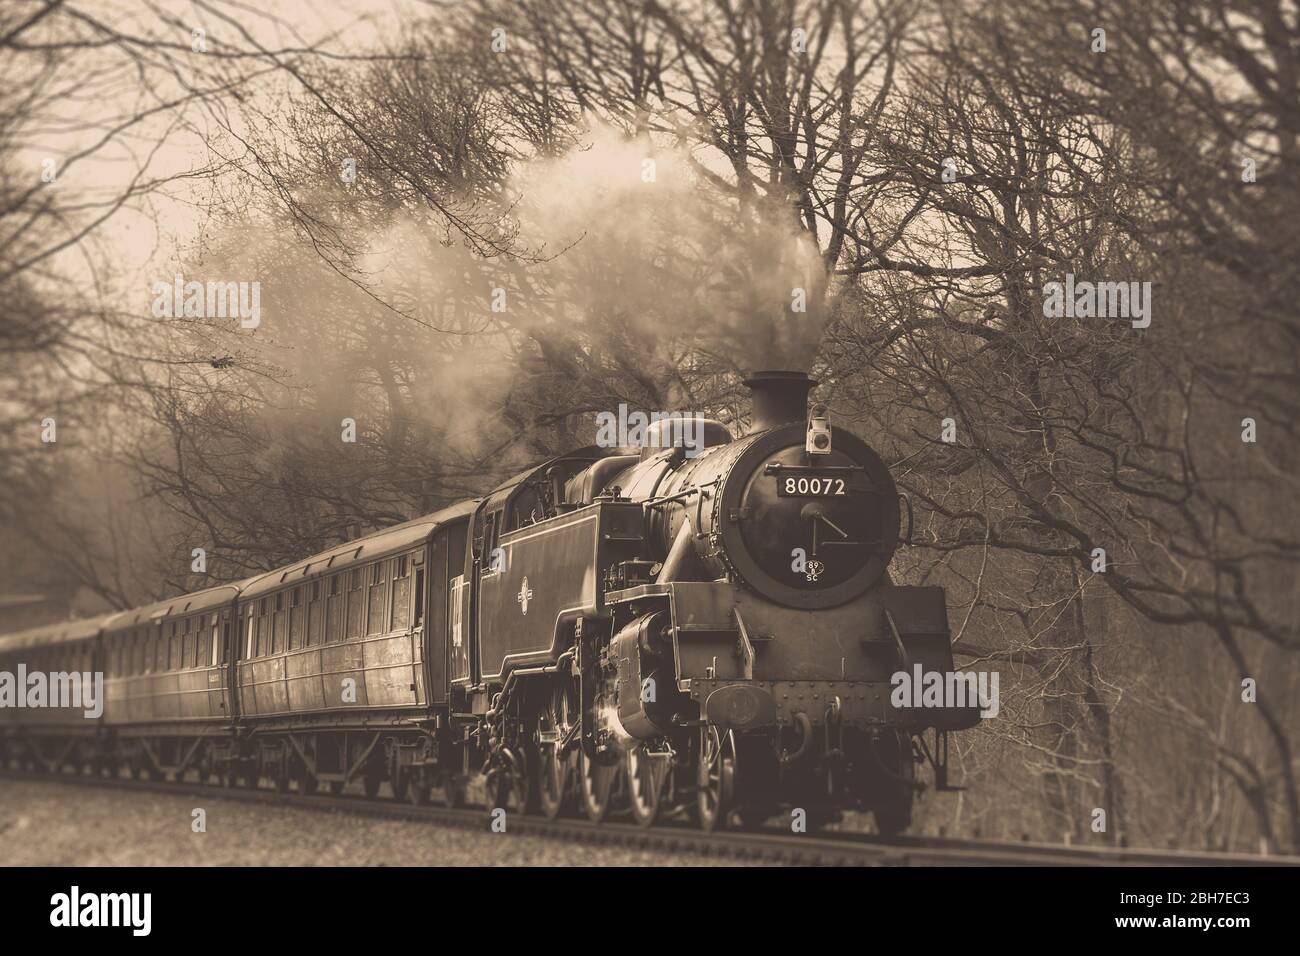 Ángulo bajo, vista sepia del tren de vapor del Reino Unido antiguo que viene en la vía ferroviaria en el campo rural de Worcestershire, línea de patrimonio ferroviario del valle de Severn, Reino Unido Foto de stock